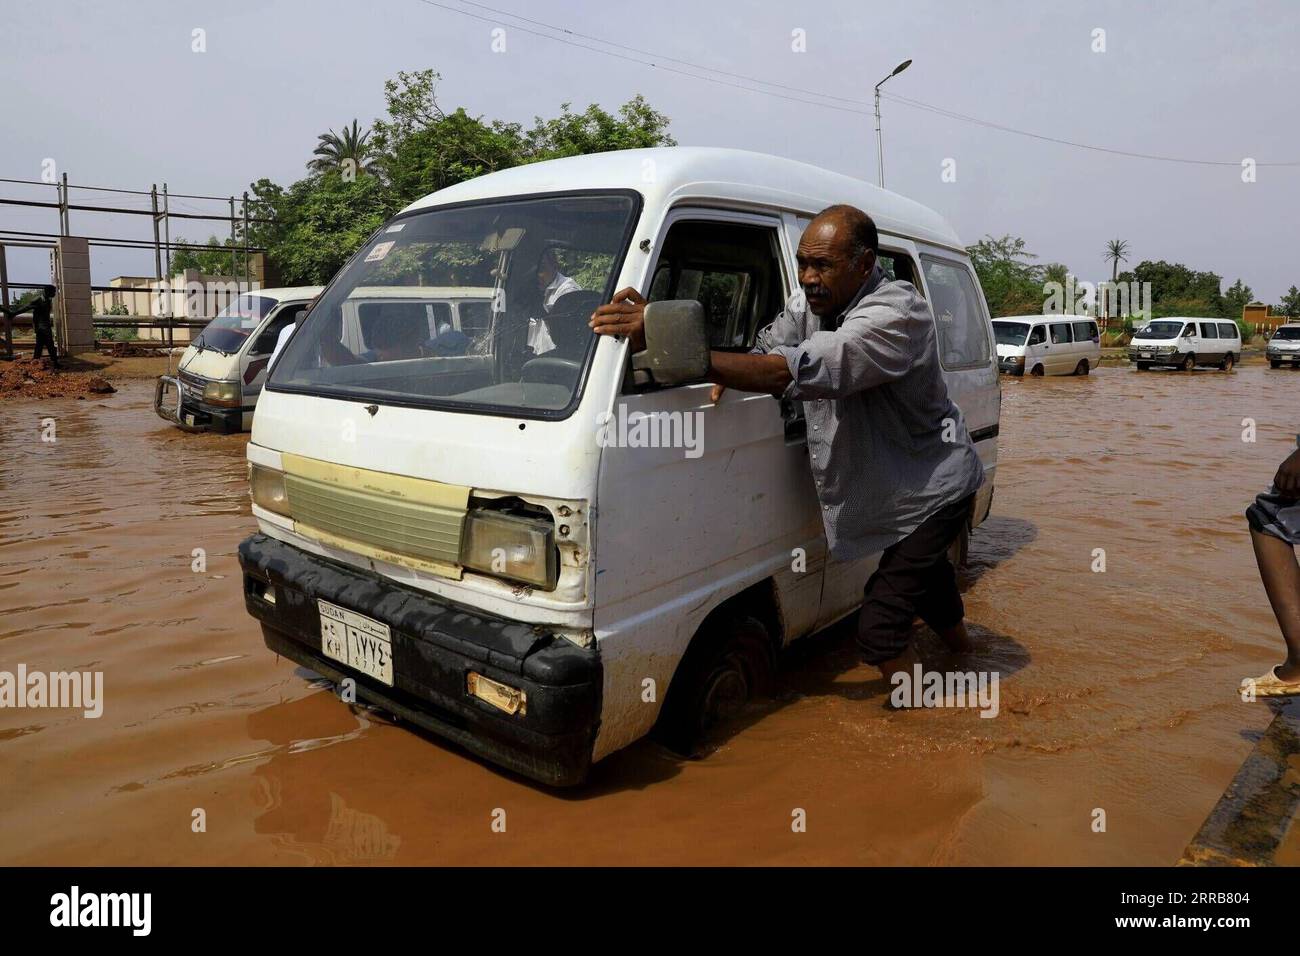 210906 -- KHARTOUM, le 6 septembre 2021 -- Un homme pousse une voiture en panne sur une route inondée après de fortes pluies à Khartoum, Soudan, le 6 septembre 2021. SOUDAN-KHARTOUM-FORTES PLUIES MohamedxKhidir PUBLICATIONxNOTxINxCHN Banque D'Images